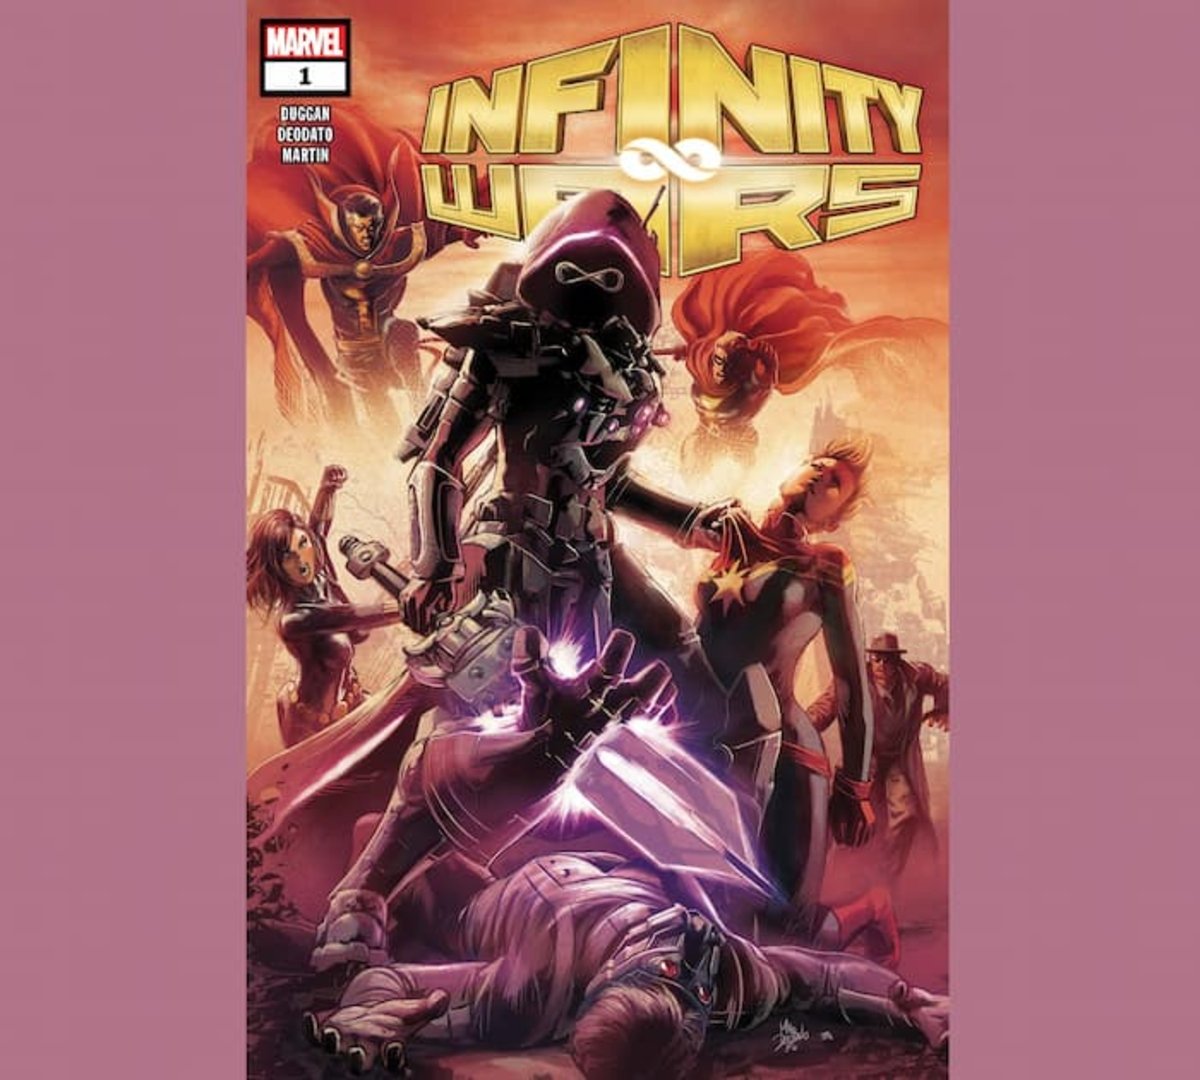 Portada del volumen #1 del cómic Infinity Wars de Marvel